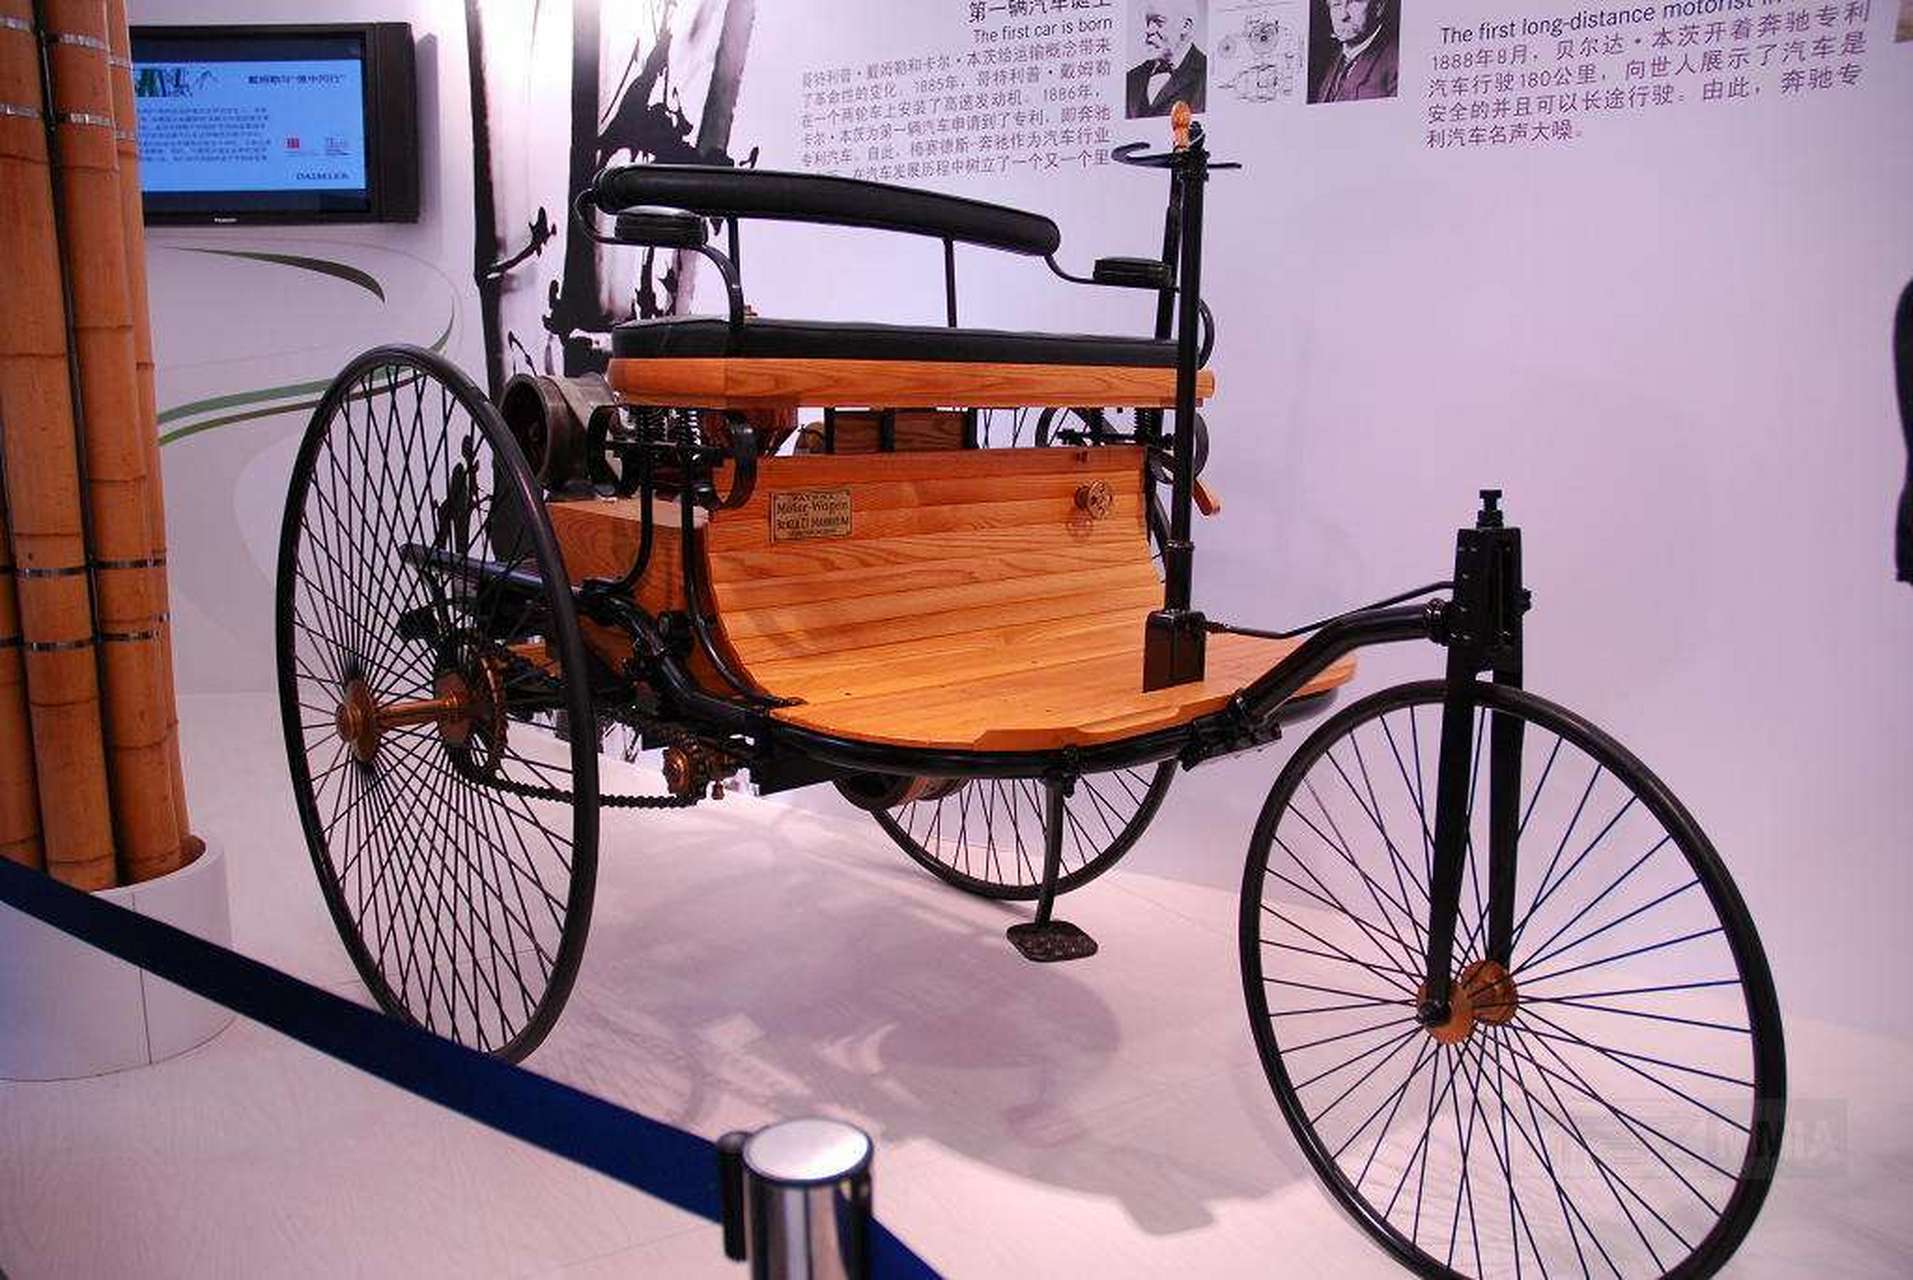 知识分享官 德国工程师卡尔·本茨造出世界上第一辆汽油机汽车后